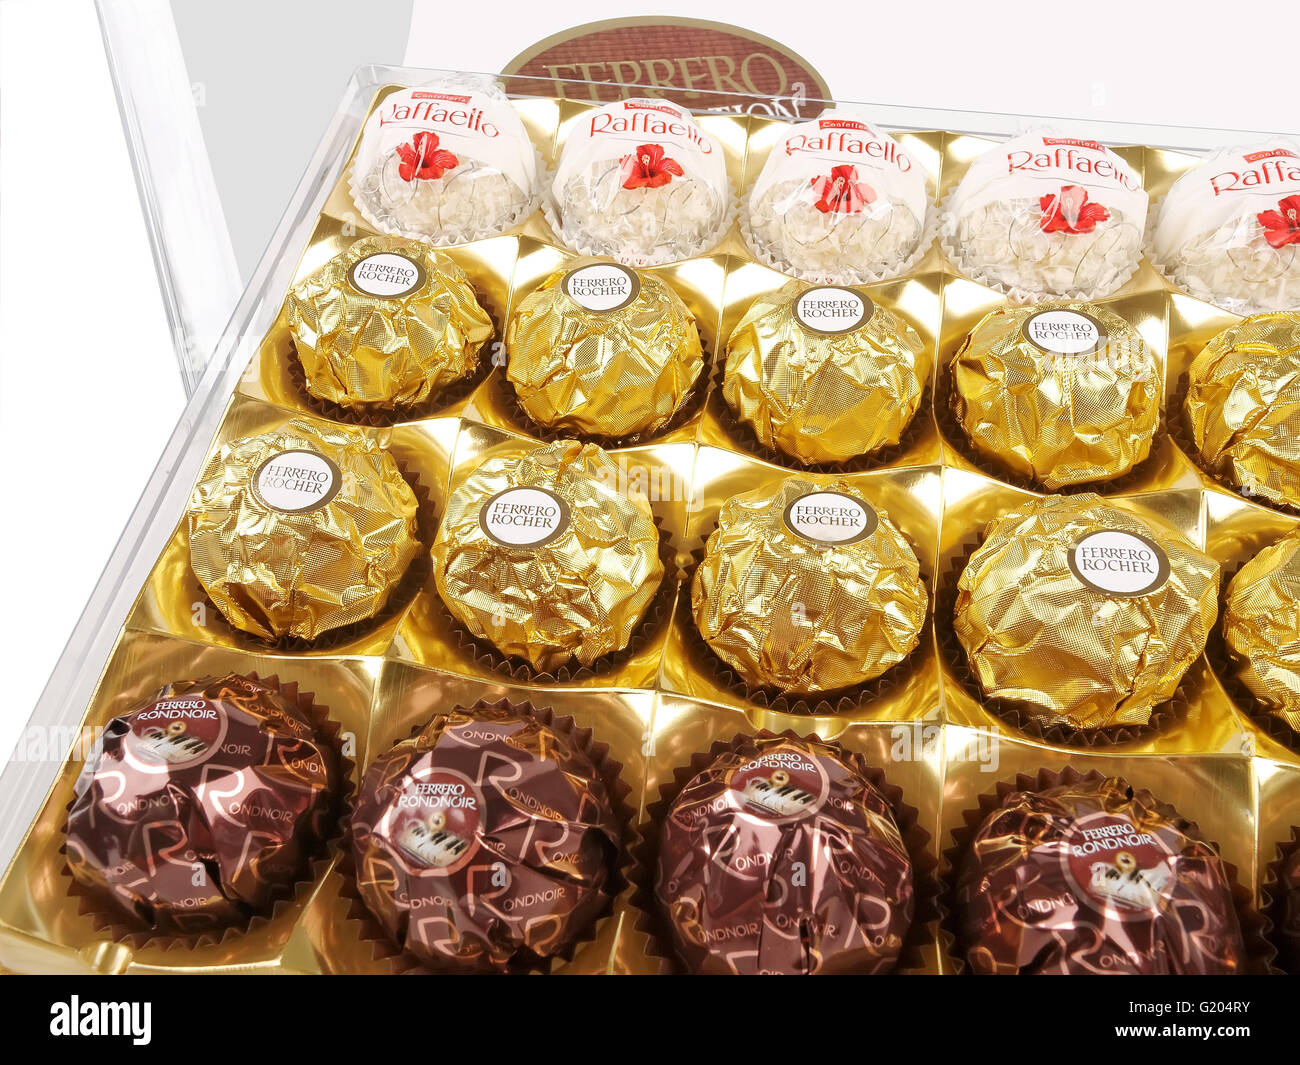 Chocolats Ferrero Collection sur un fond blanc. Ferrero est la marque de chocolat italien. Banque D'Images